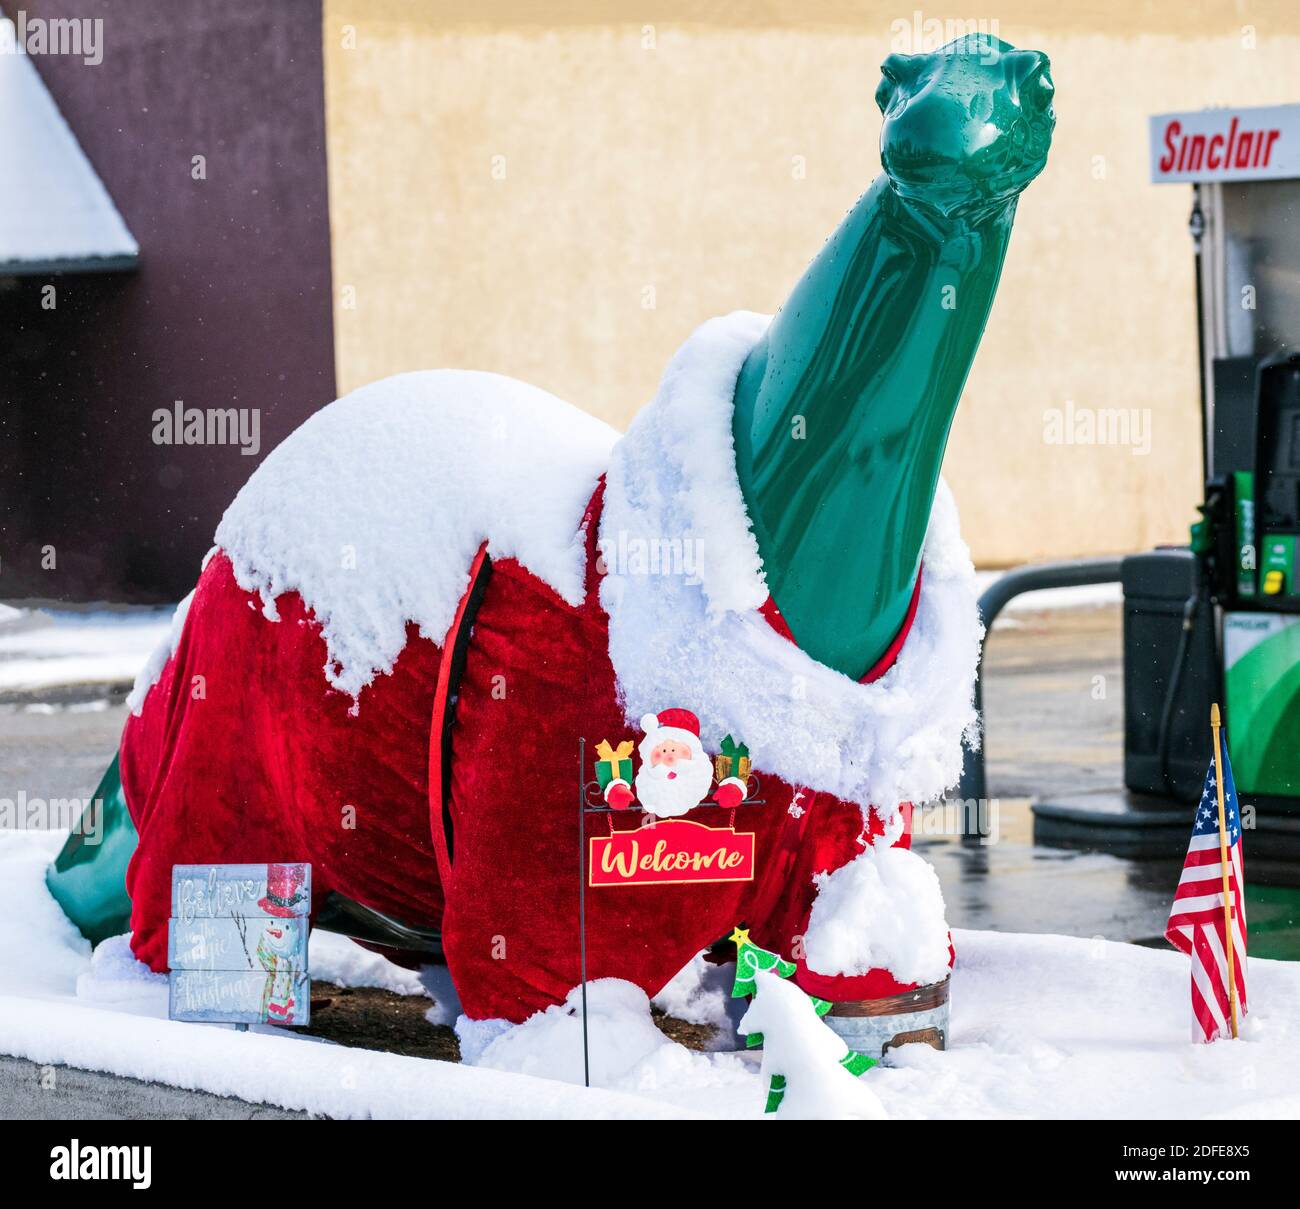 Dino, die Dinosaurier-Ikone von Sinclair Oil, dekoriert zu Weihnachten an der Sinclair Tankstelle; Salida; Colorado; USA Stockfoto